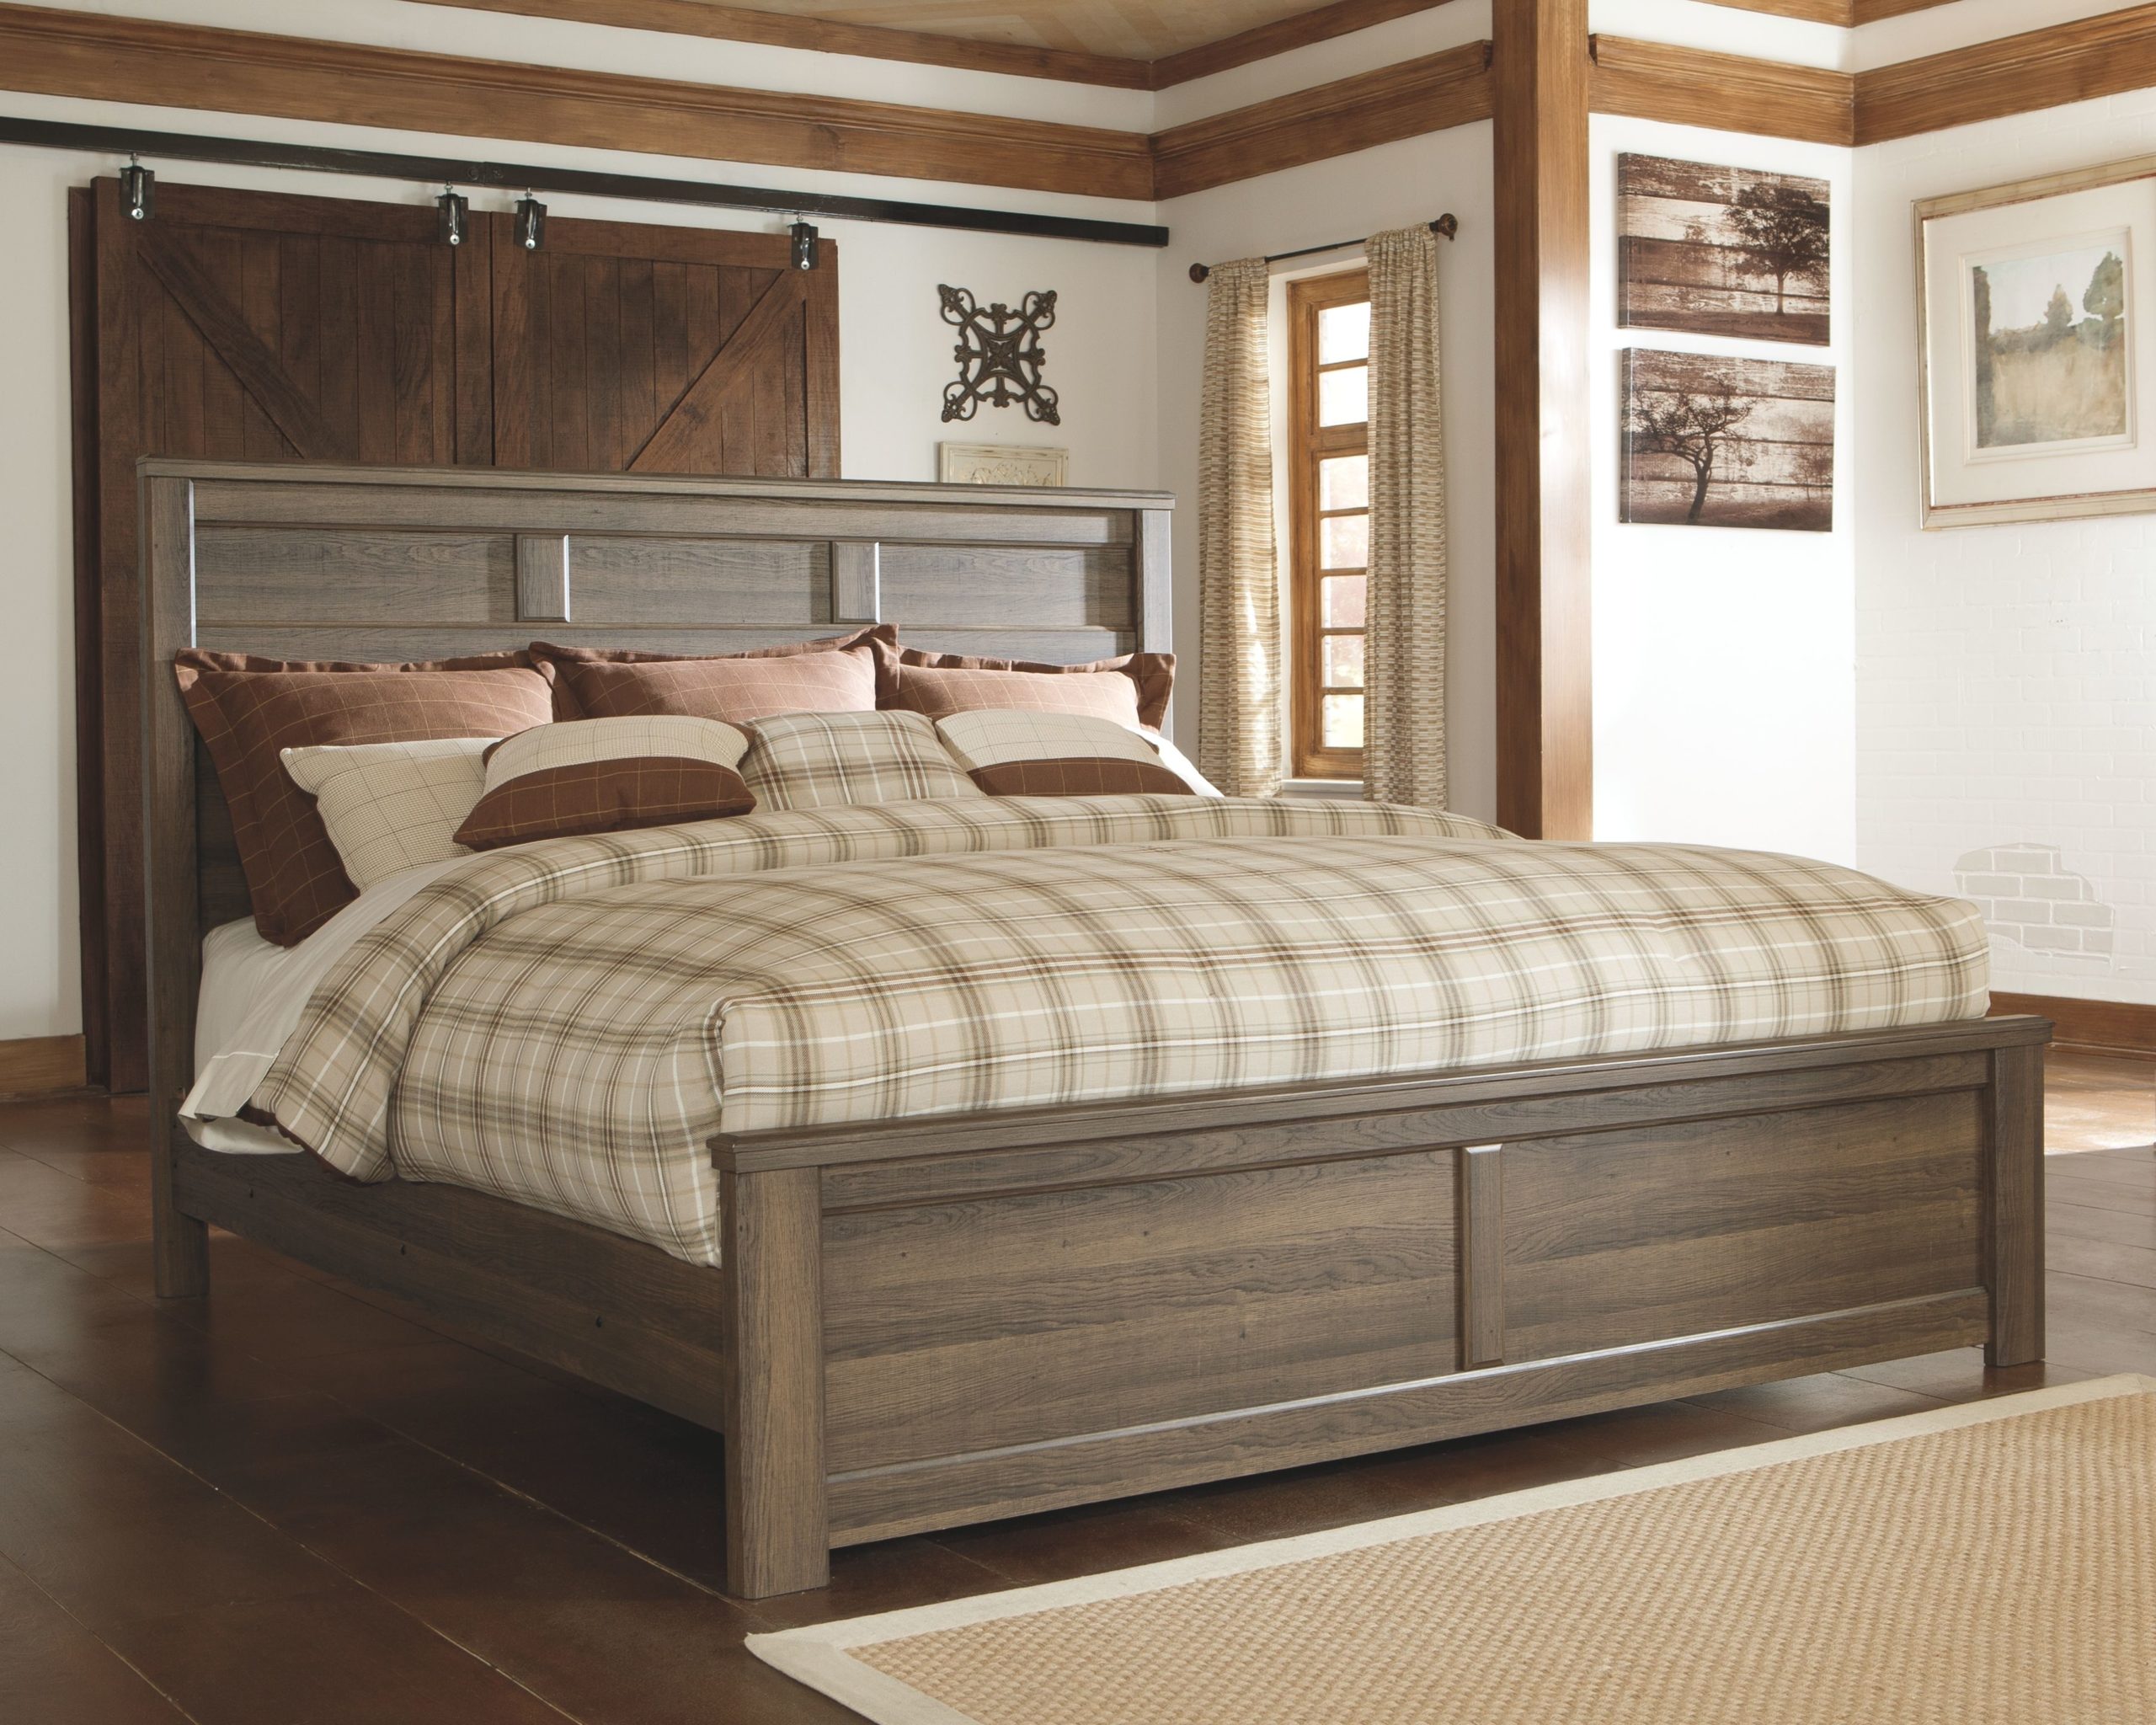 King Bedroom Sets Dark Wood : Rustic Bedding: King Size Cabin Quilt ...